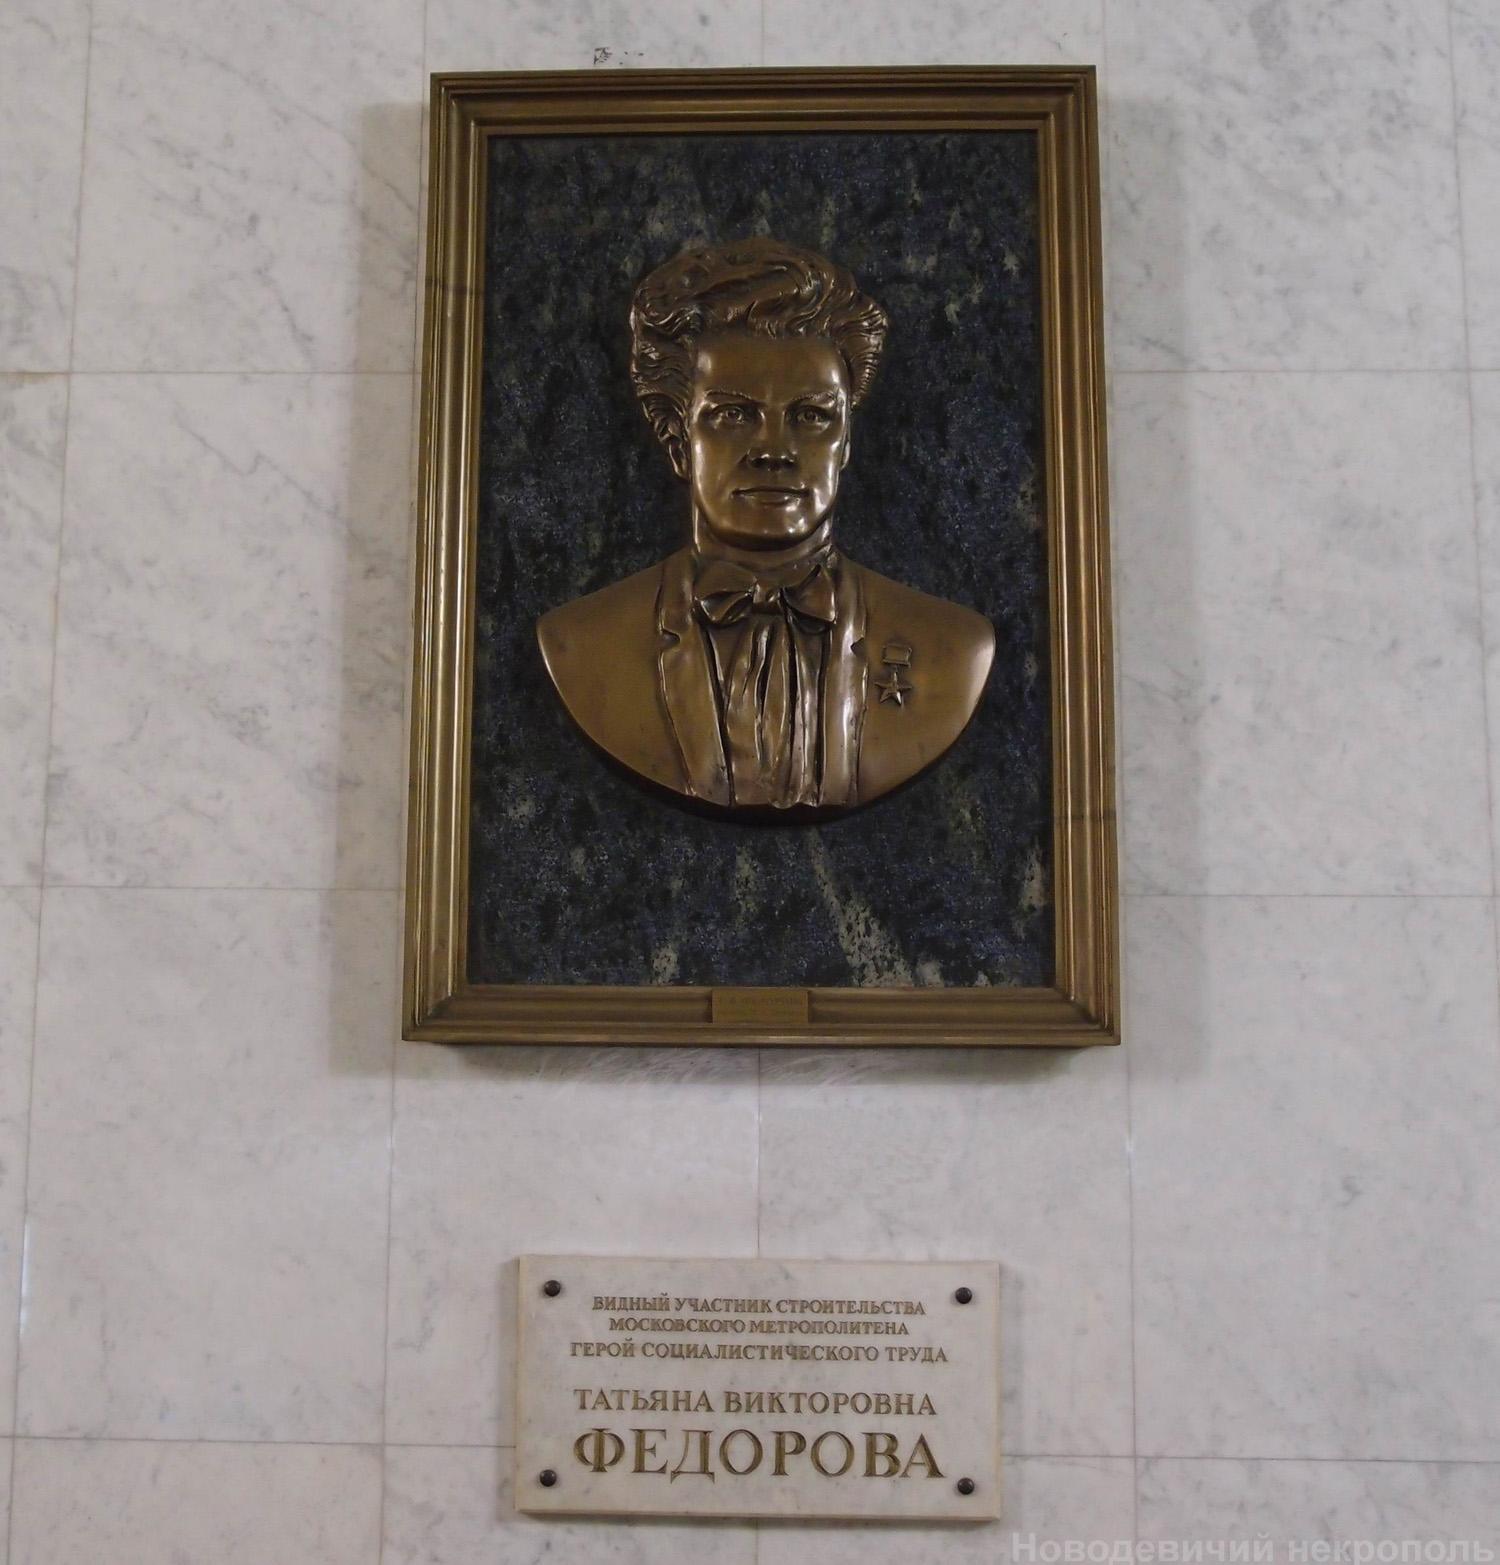 Мемориальная доска Фёдоровой Т.В. (1915–2001), ск. А.Н.Бурганов, в вестибюле станции метро «Красносельская», открыта 15.5.2006.